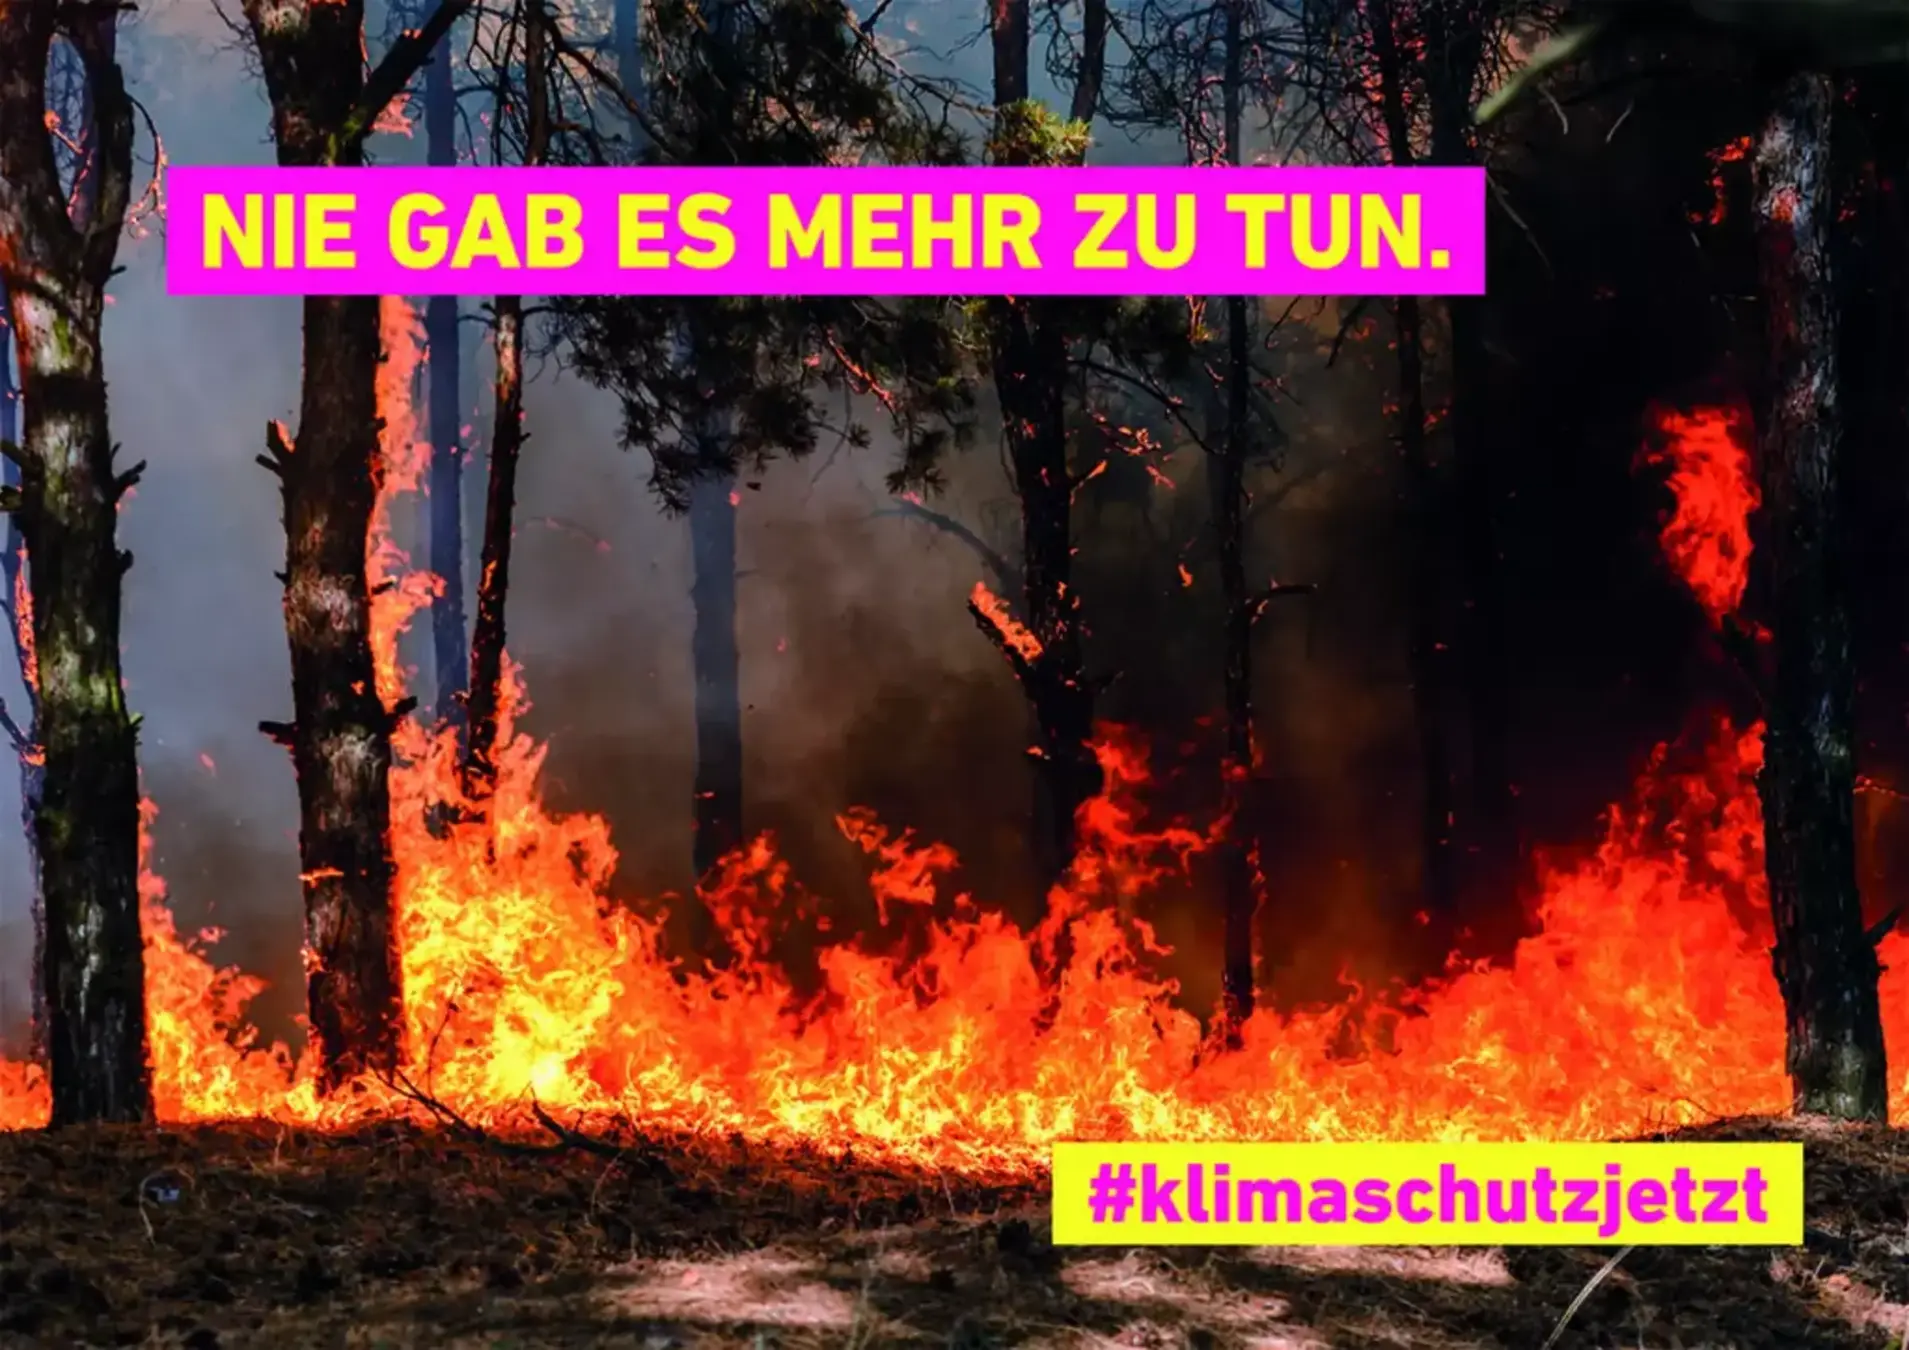 Zu sehen ist ein brennender Wald. In den Farben der FDP (Pink und Geld) steht: Nie gab es mehr zu tun #klimaschutzjetzt